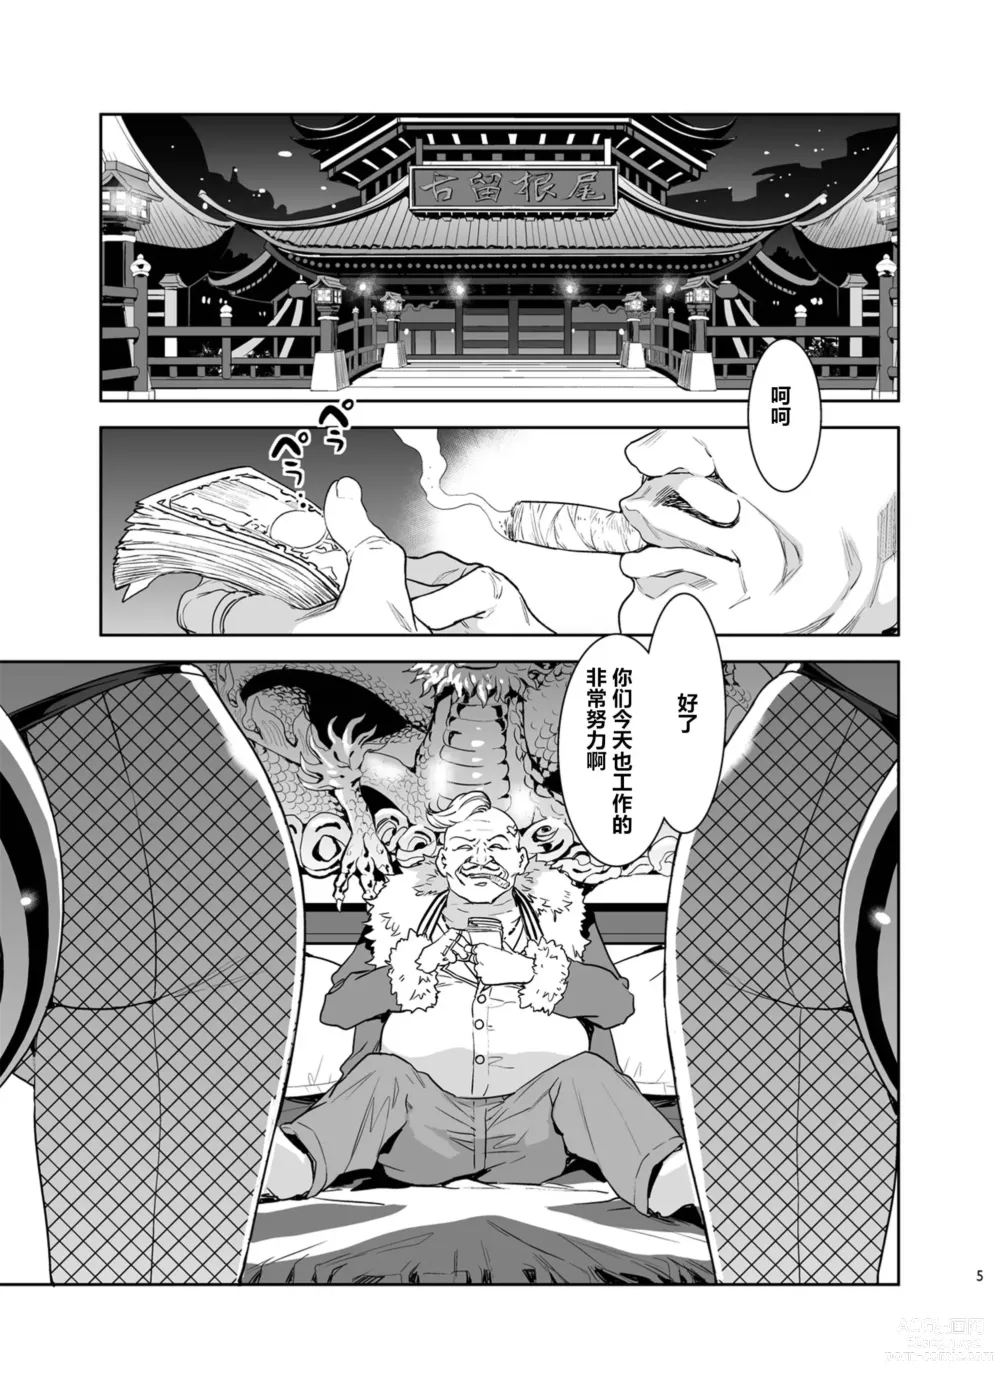 Page 5 of doujinshi Mitsubachi no Yakata Nigou-kan Seventh Heaven-ten